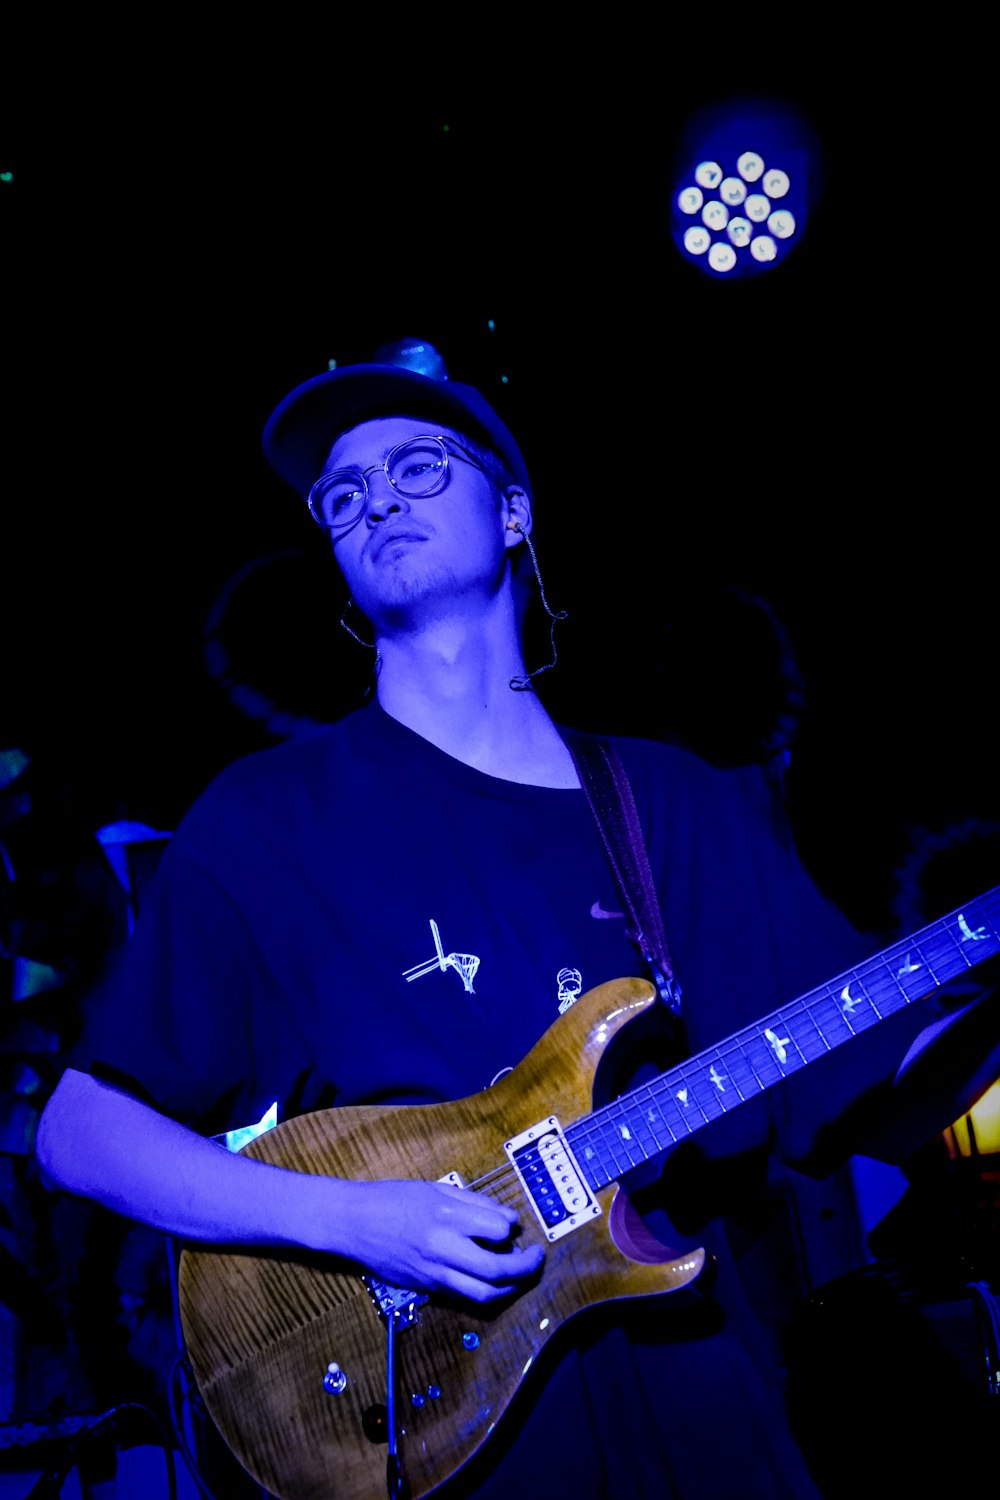 un uomo con cappello e occhiali che suona una chitarra